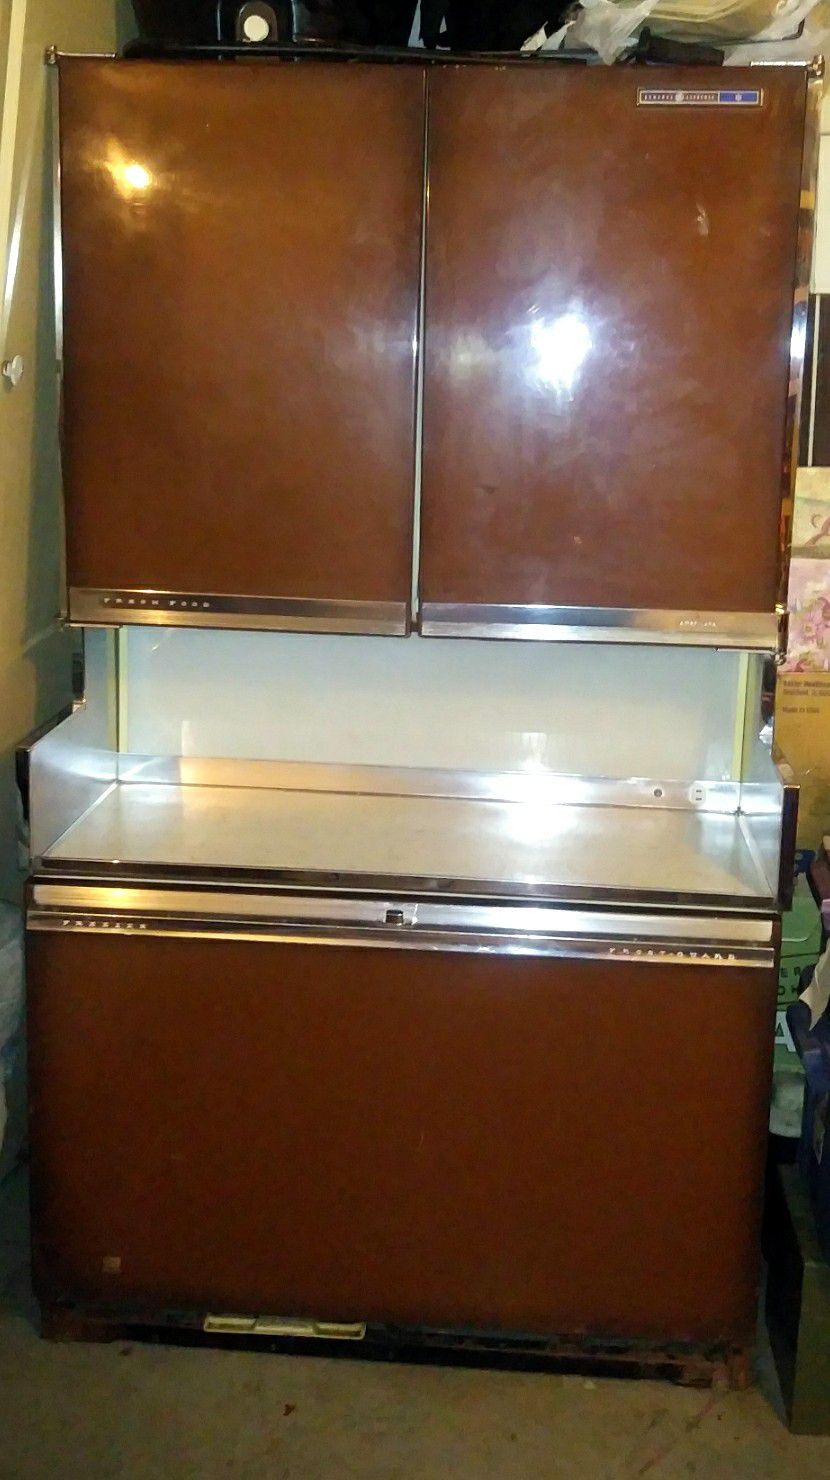 Vintage 1964 General Electric Americana Refrigerator